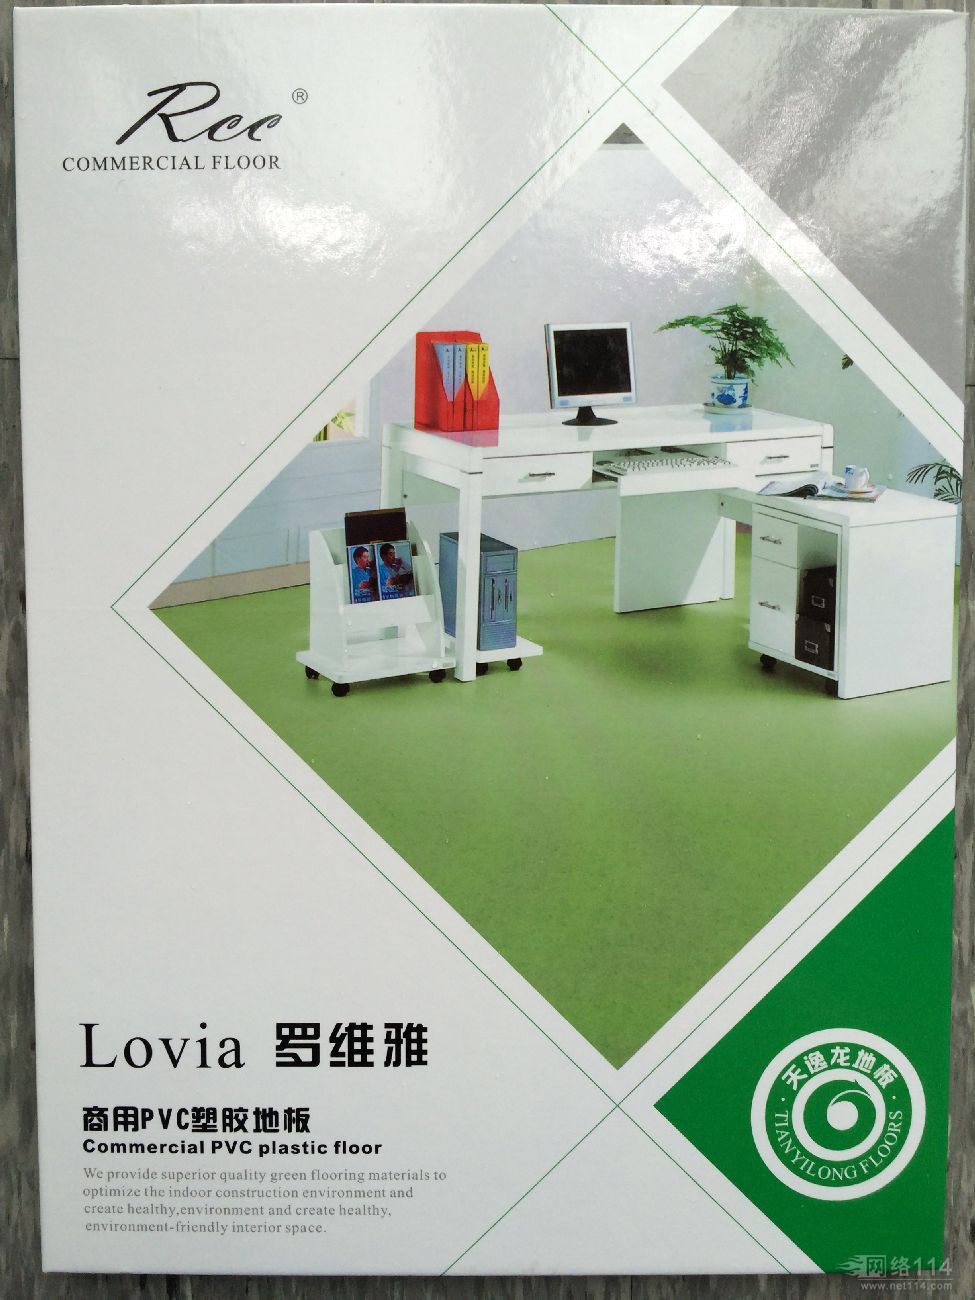 罗维雅商用pvc塑胶地板，天逸龙地板，Rcc塑胶地板